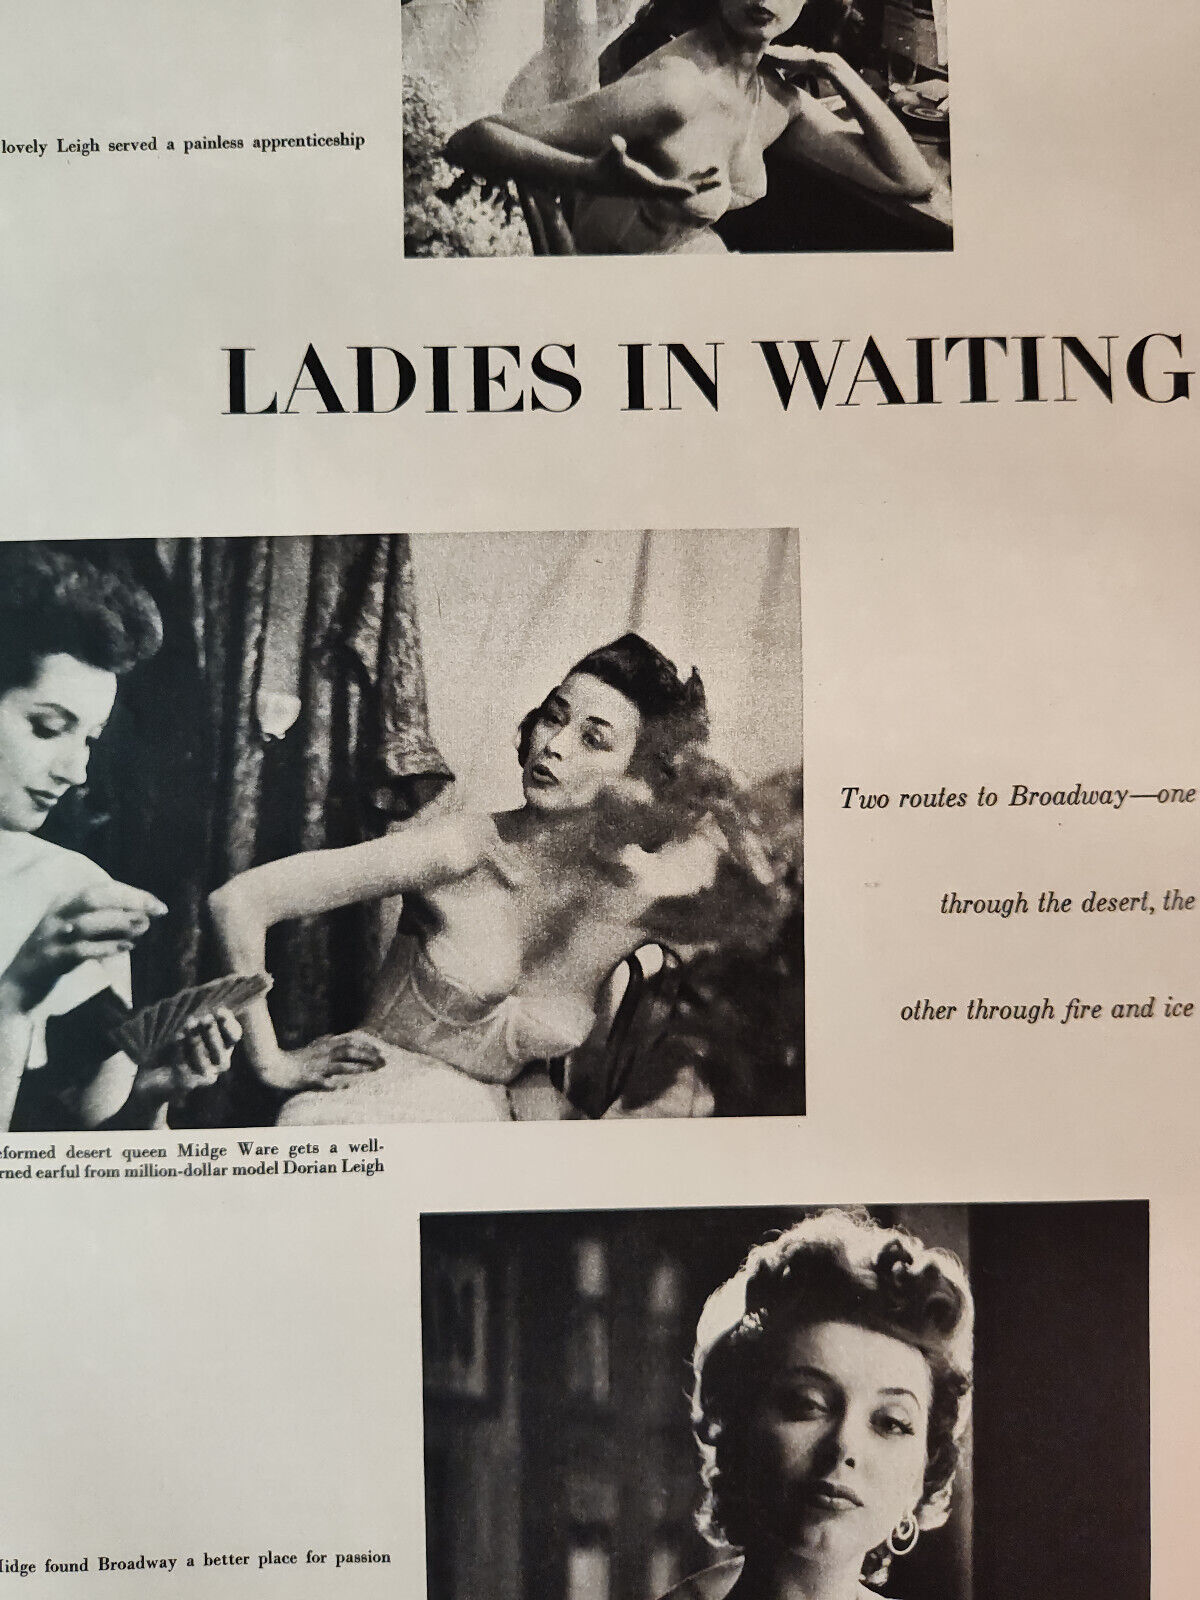 1953 Esquire Original Article LADIES IN WAITING Midge Ware Dorian Leigh Photos